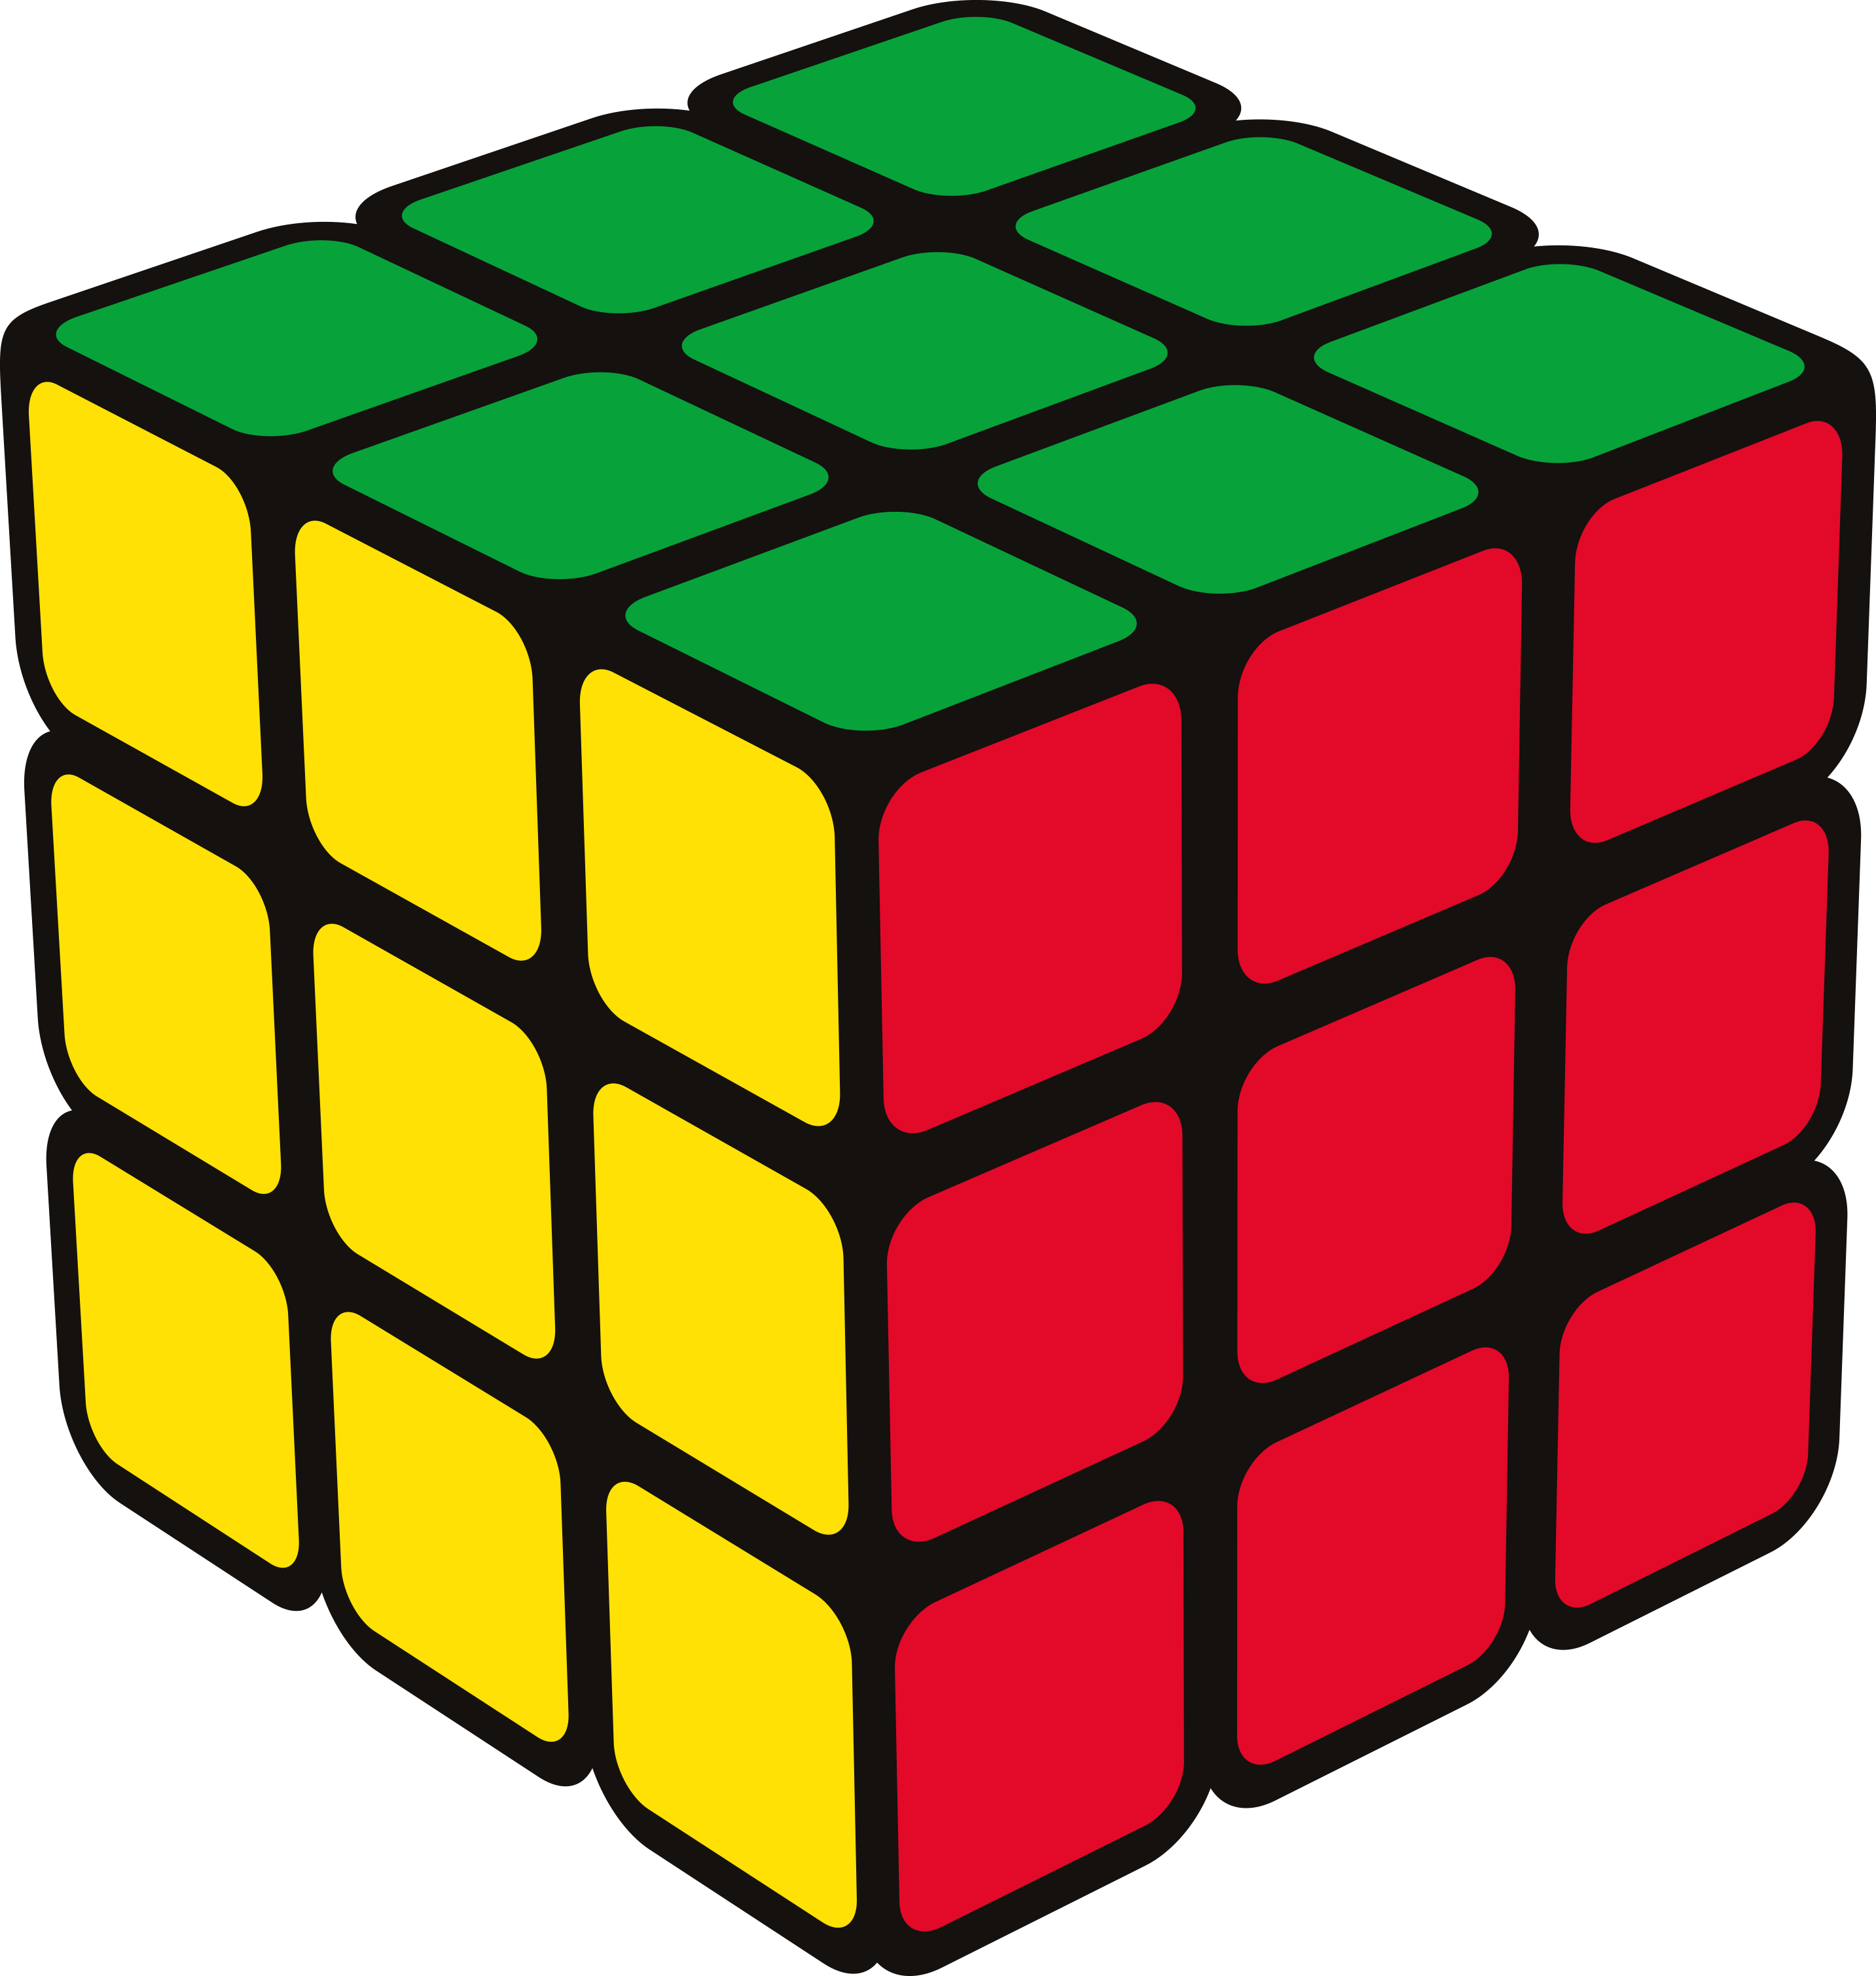 Kubik. Кубик Рубика 3 на 3. Рубикс кубик Рубика 3х3. Кубик Рубика Rubiks 3x3. Кубик рубик 3x3 1974.